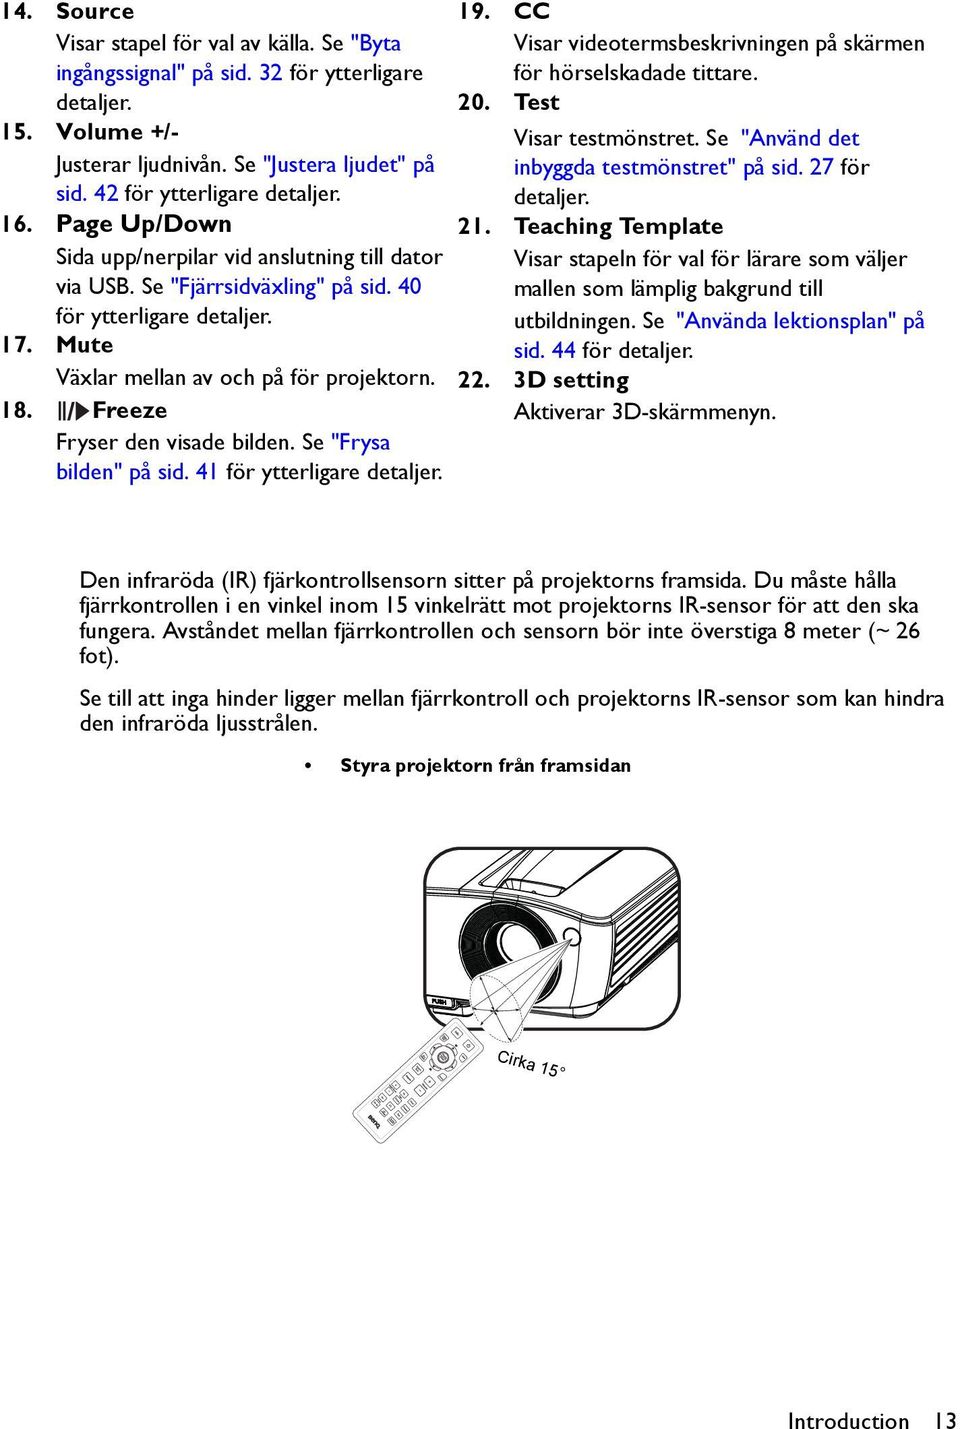 MX661 Digital Projektor Användarhandbok - PDF Free Download